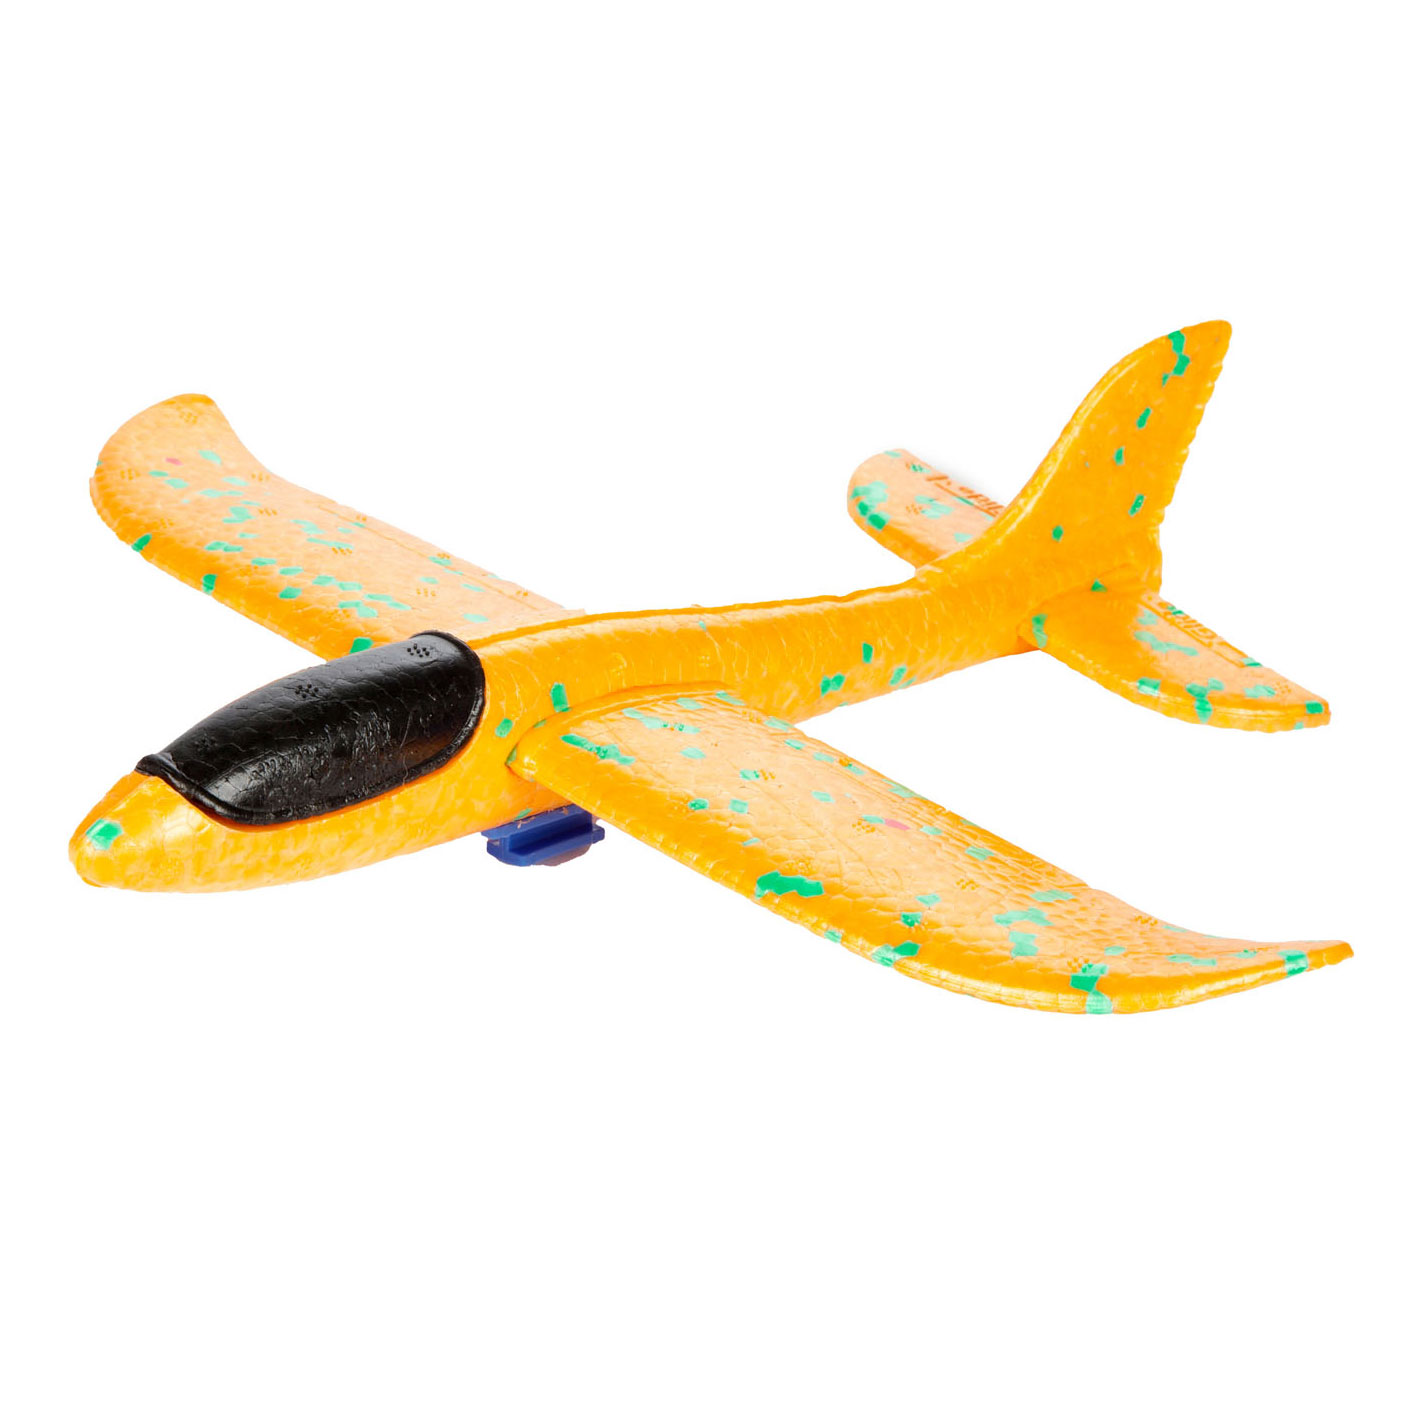 Luftschaumflugzeug mit Schusskanone, 24 cm